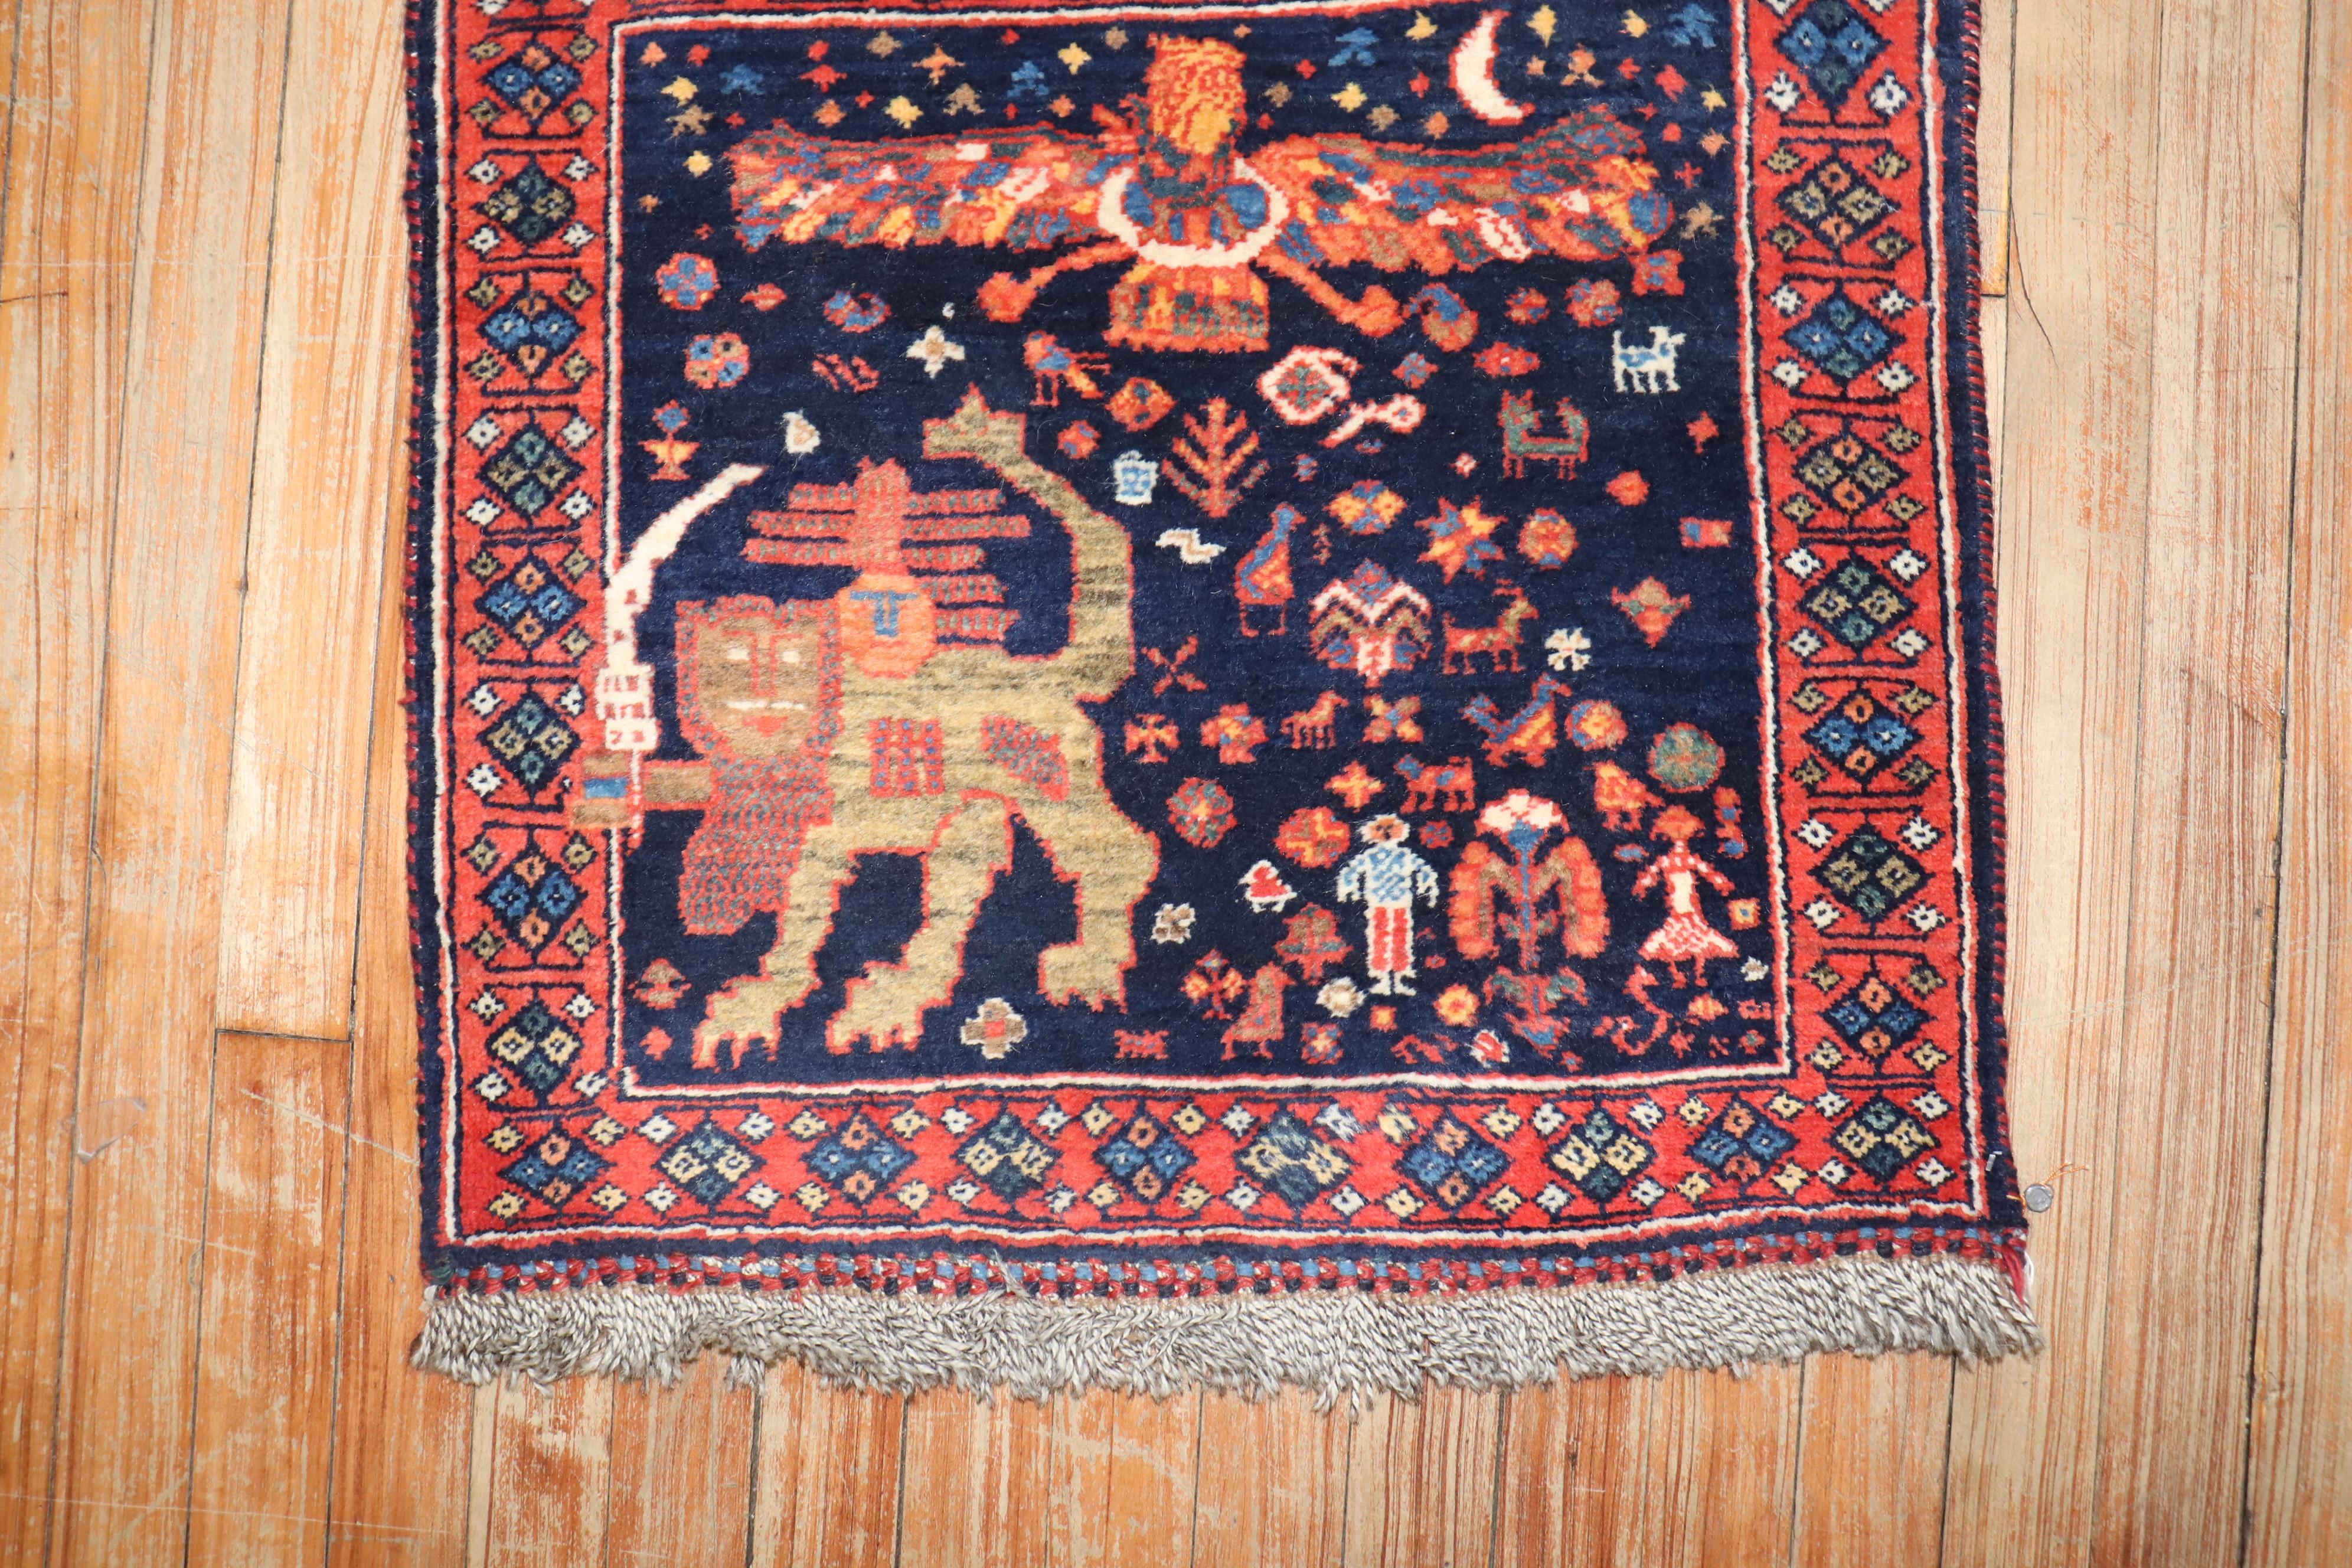 un petit tapis persan Shiraz Pictorial du début du 20e siècle à face de sac

2' x 2'5''